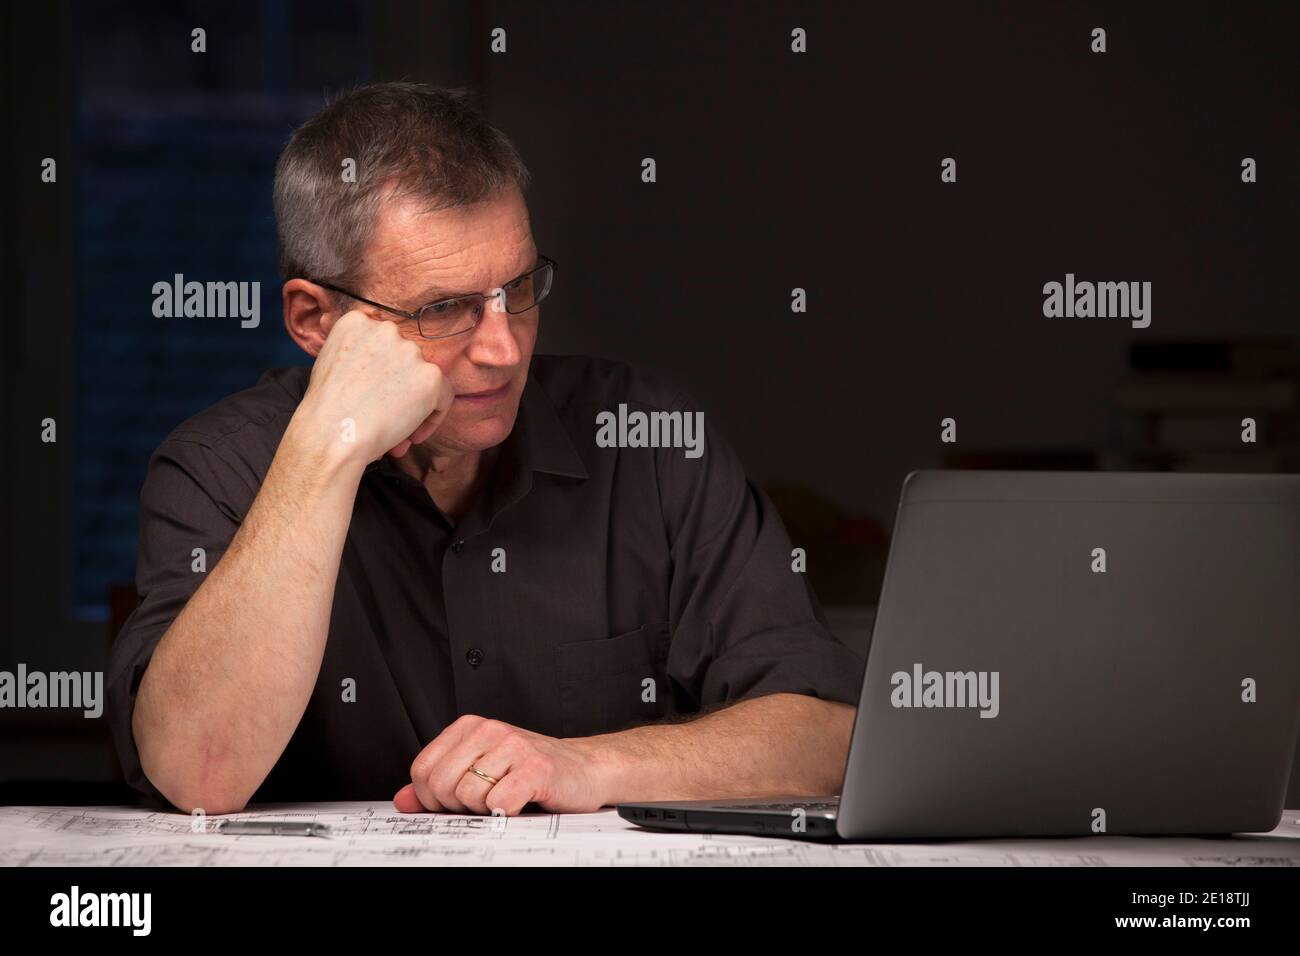 Hombre de negocios maduro o ingeniero en camisa oscura sentado por la noche en un escritorio mirando a un portátil - imagen oscura Foto de stock